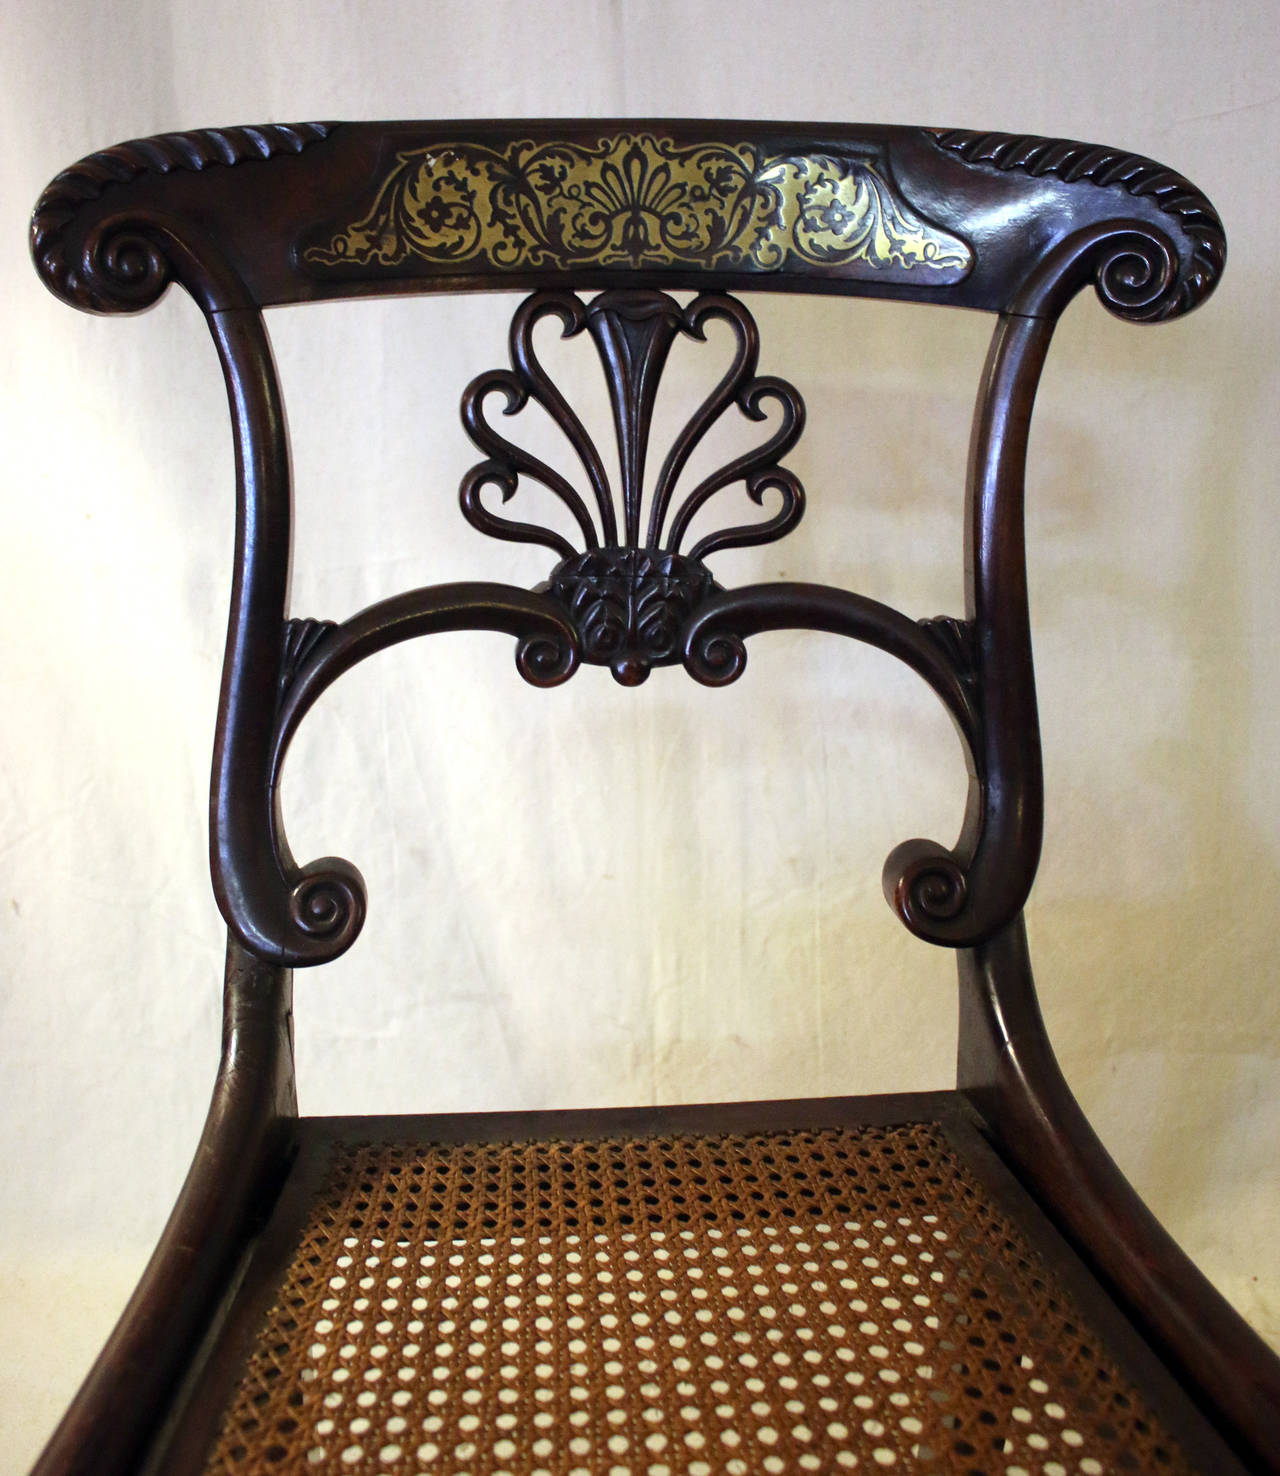 Paire de chaises Regency en acajou du début du 19e siècle, avec marqueterie Boulle et assise cannelée. Ces objets sont de qualité muséale et conviennent à une entrée ou à un endroit spécial avec un usage léger. Dos serpentins très gracieux. Voir les